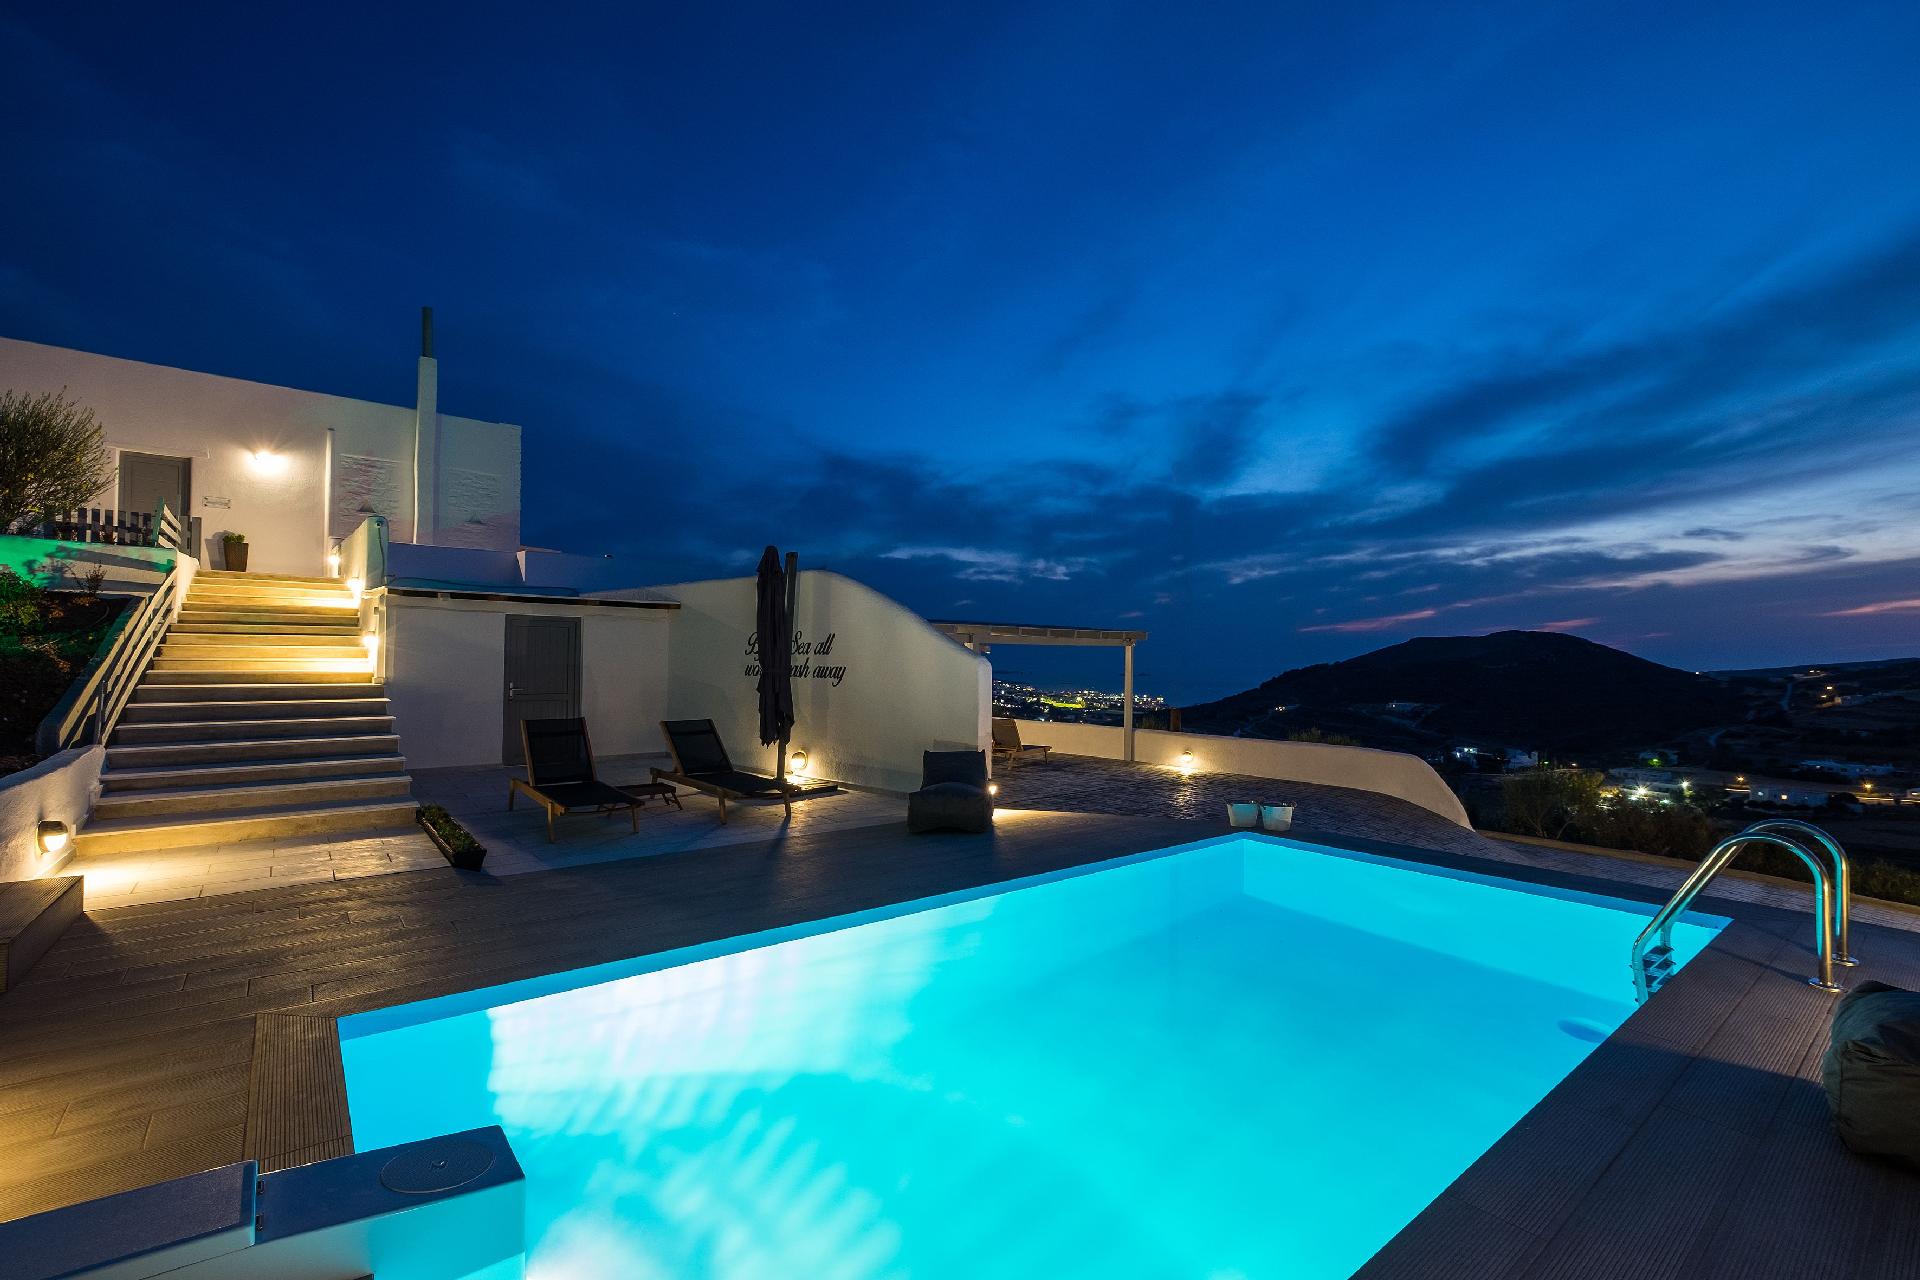 Ferienhaus mit Privatpool für 4 Personen  + 4 Ferienhaus in Griechenland